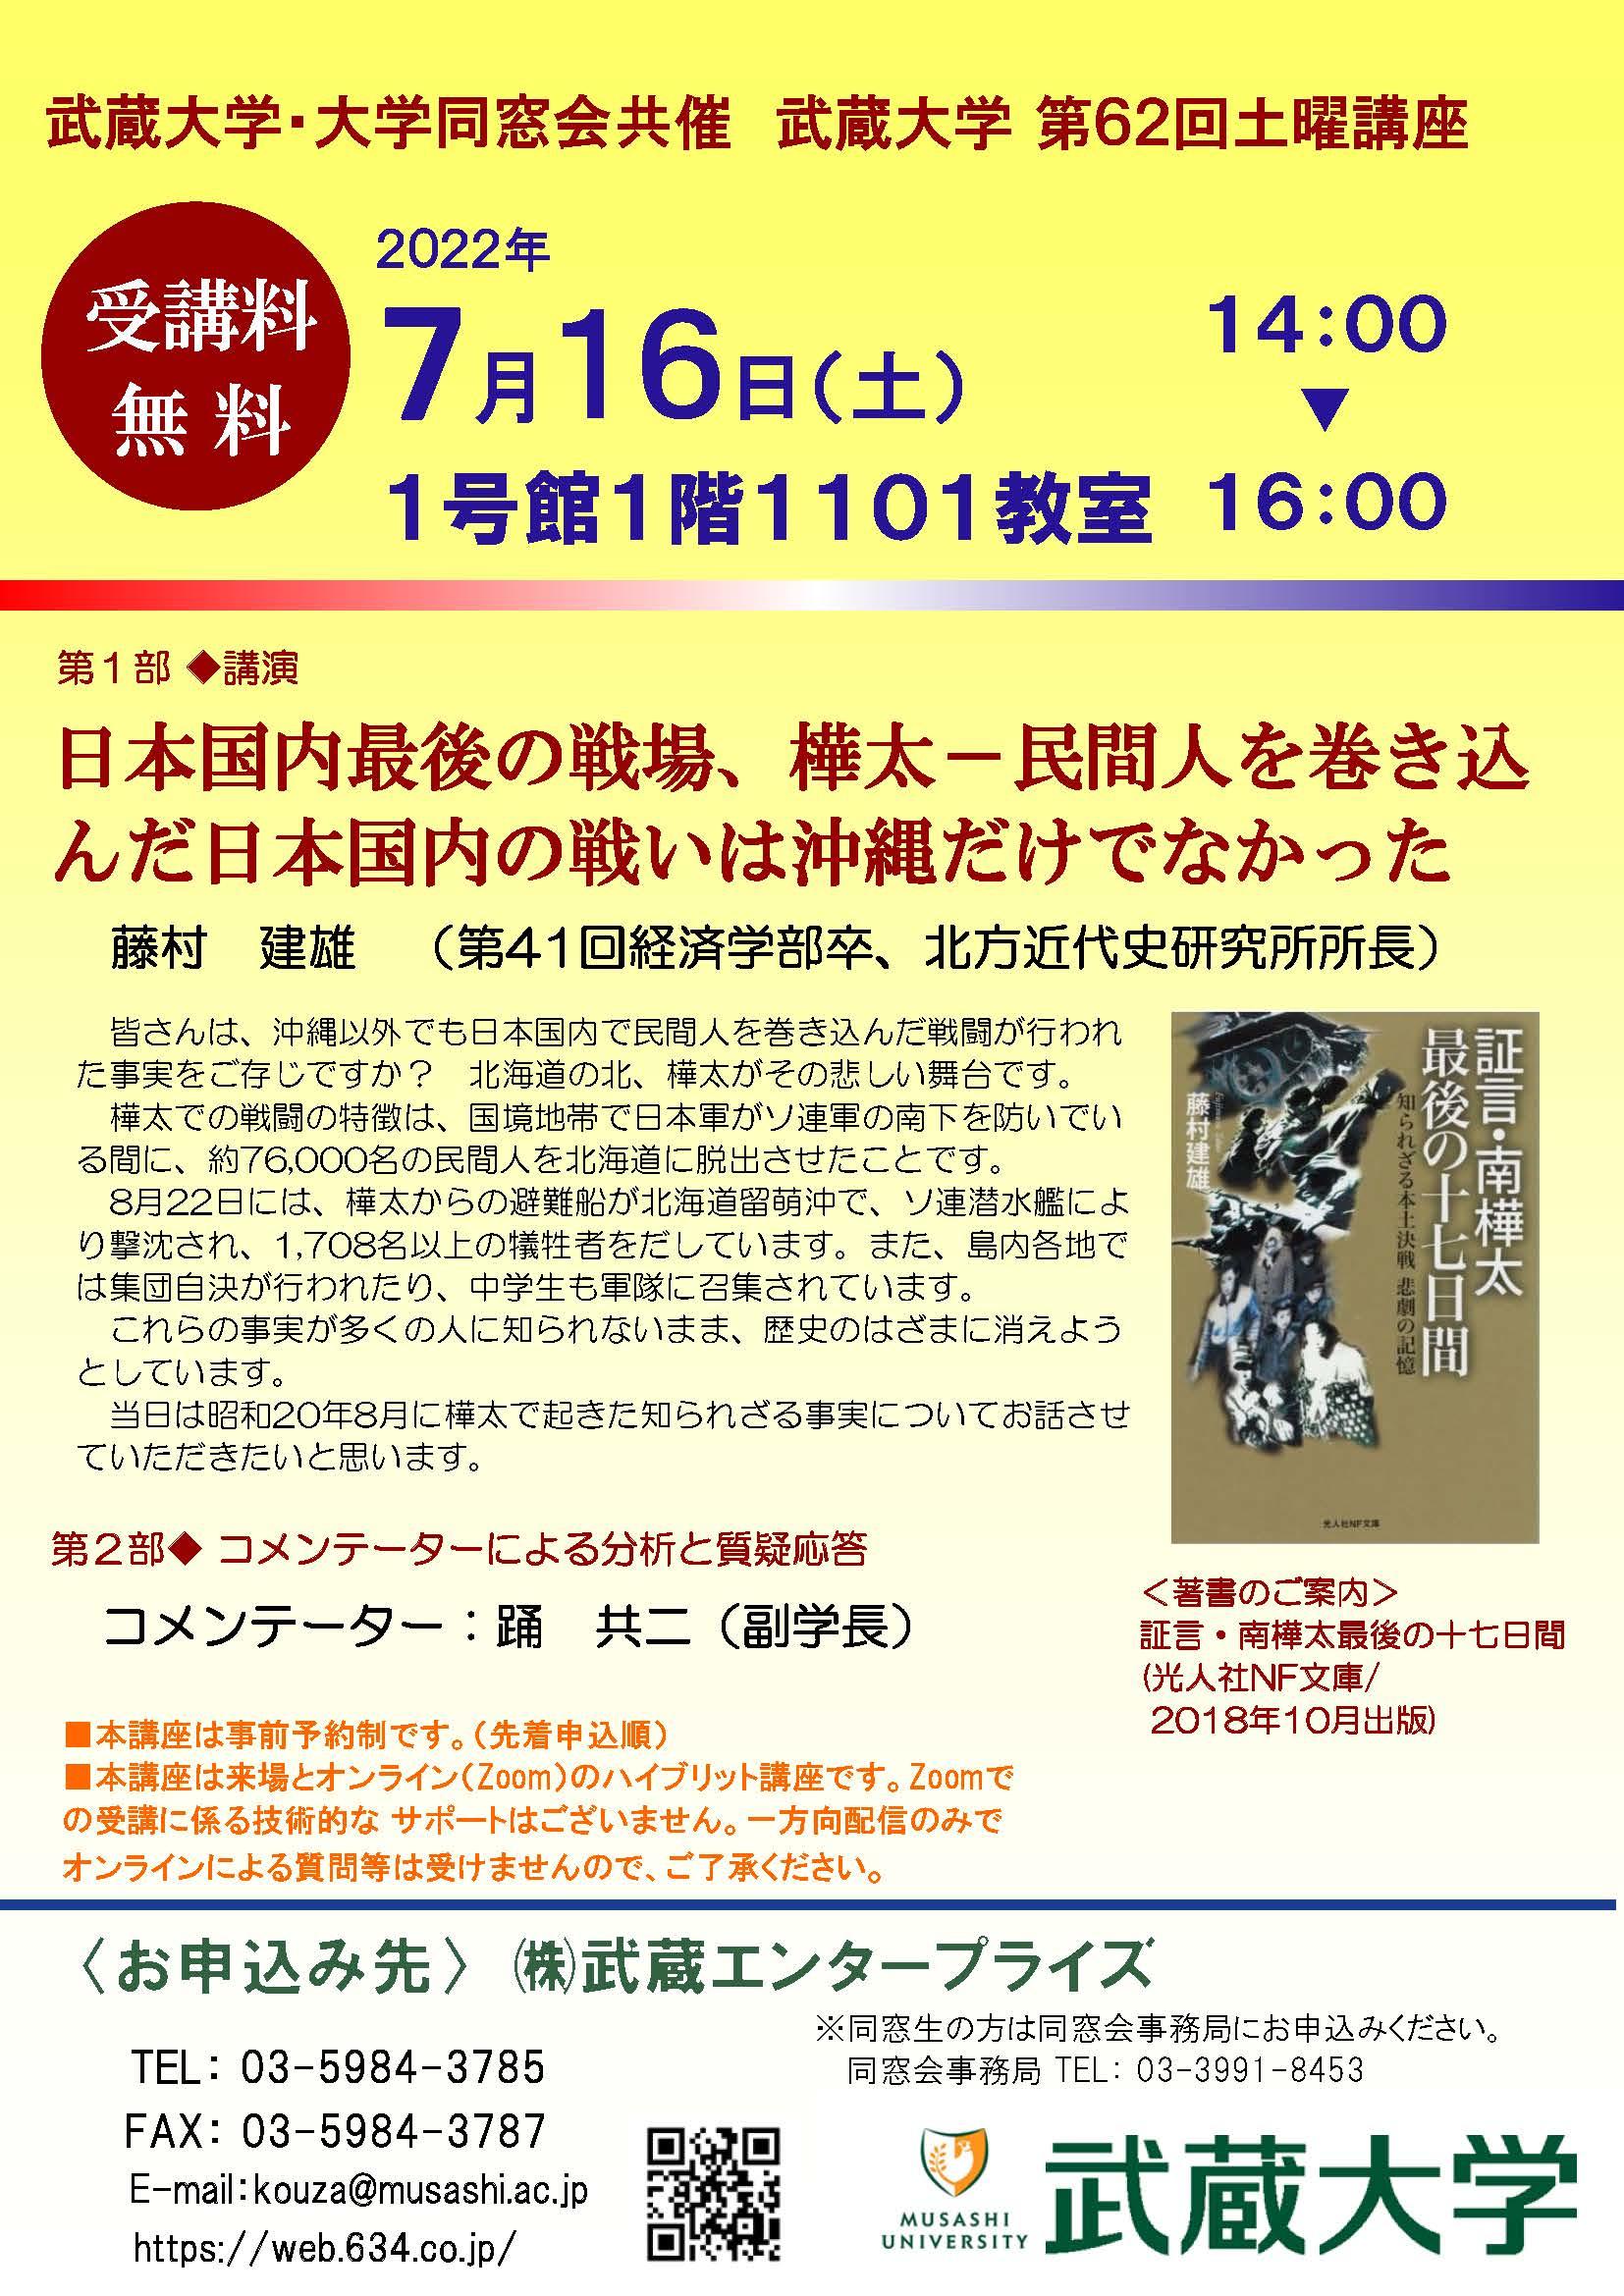 【武蔵大学】第62回土曜講座「日本国内最後の戦場、樺太 -- 民間人を巻き込んだ日本国内の戦いは沖縄だけでなかった」7月16日（土）開催